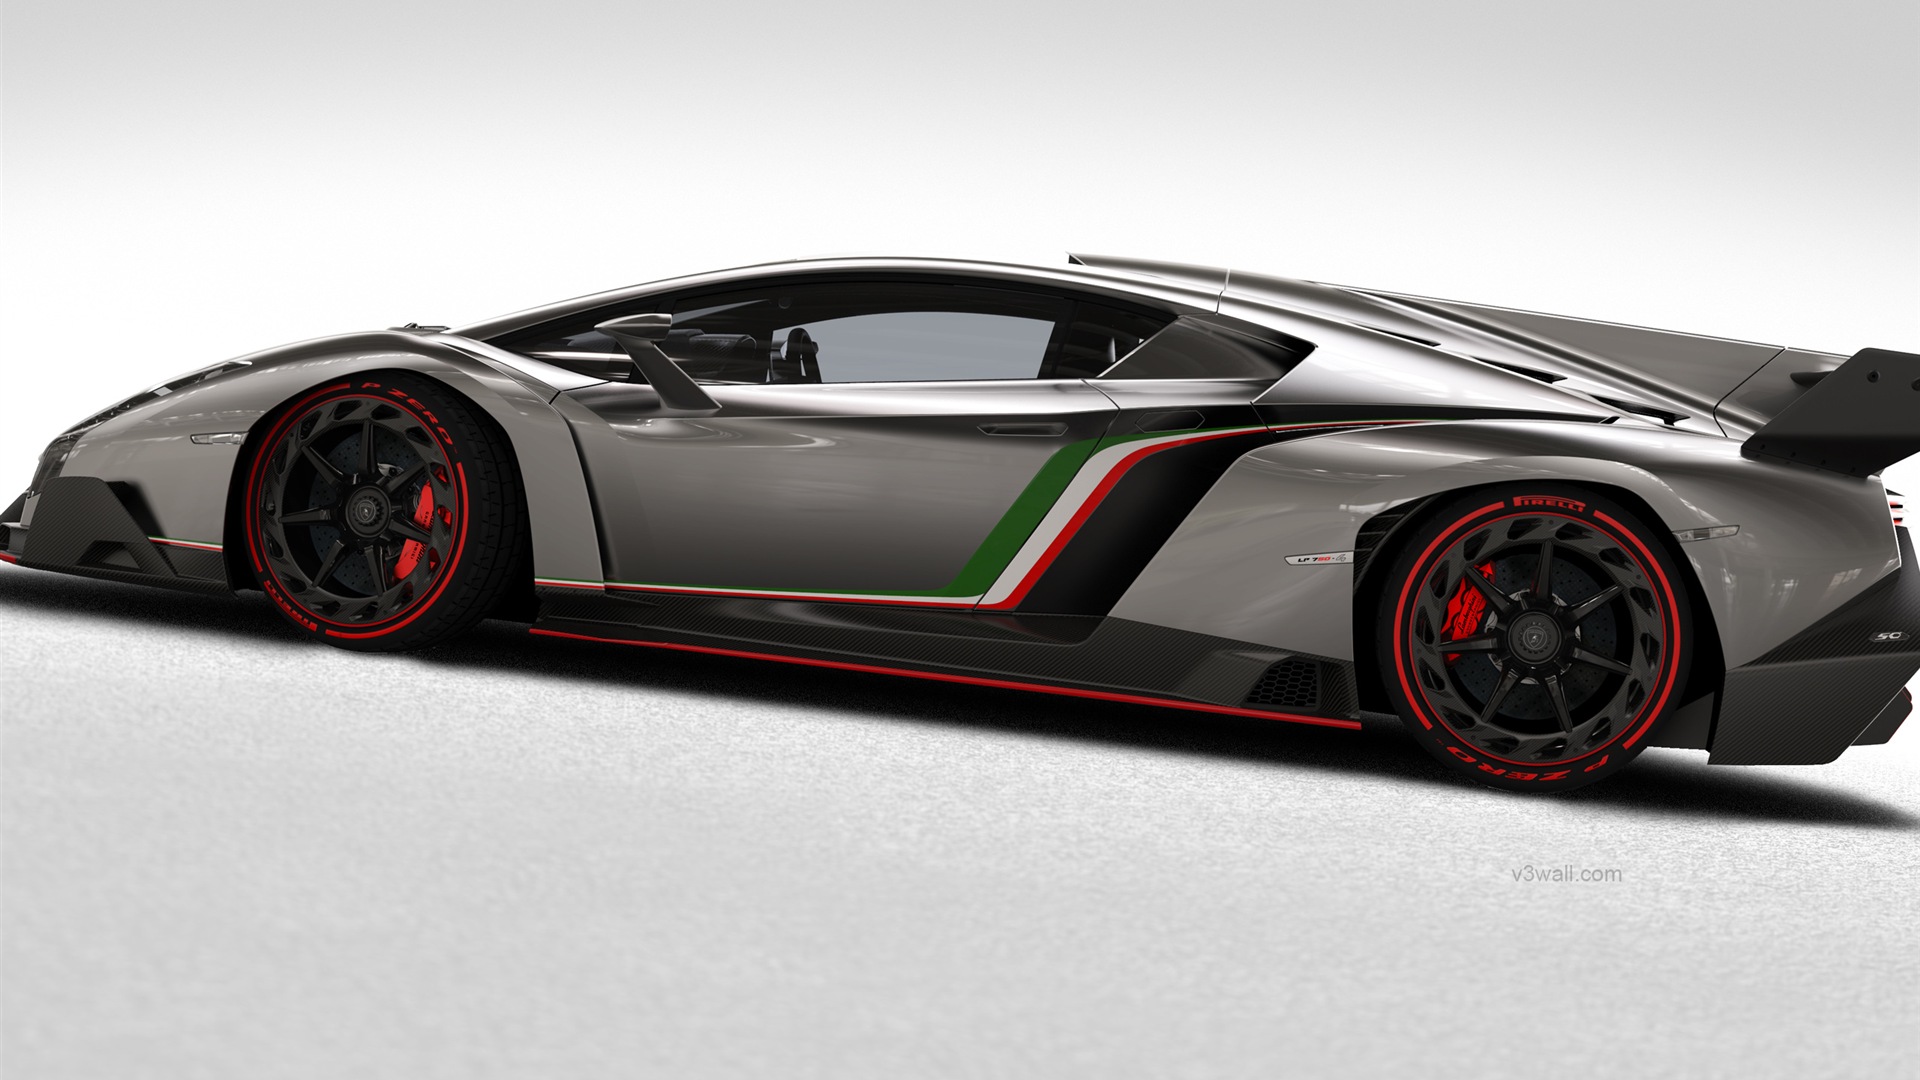 2013 Lamborghini Veneno 蘭博基尼Veneno豪華超級跑車高清壁紙 #3 - 1920x1080